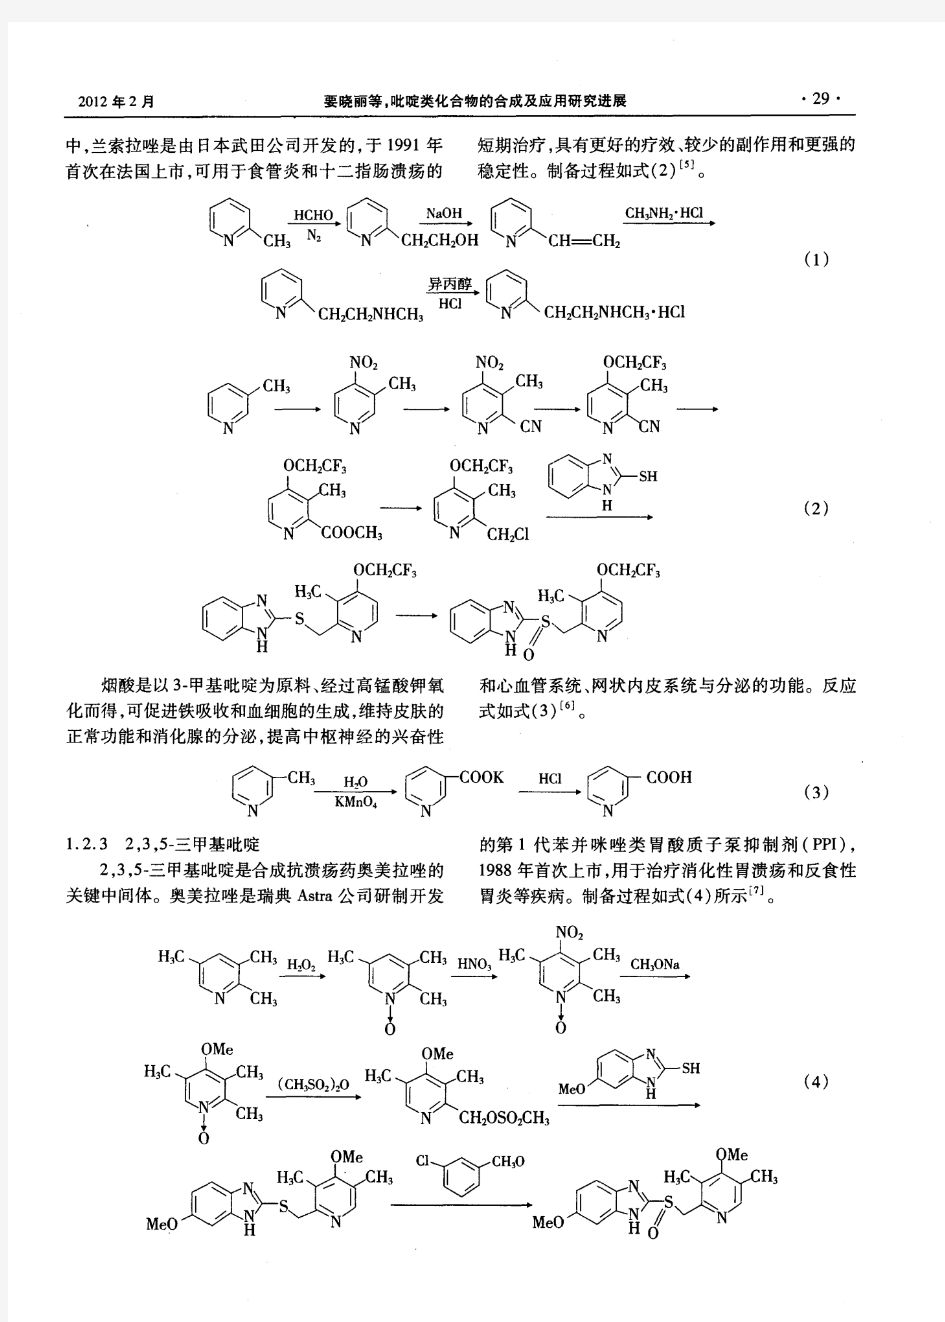 吡啶类化合物的合成及应用研究进展